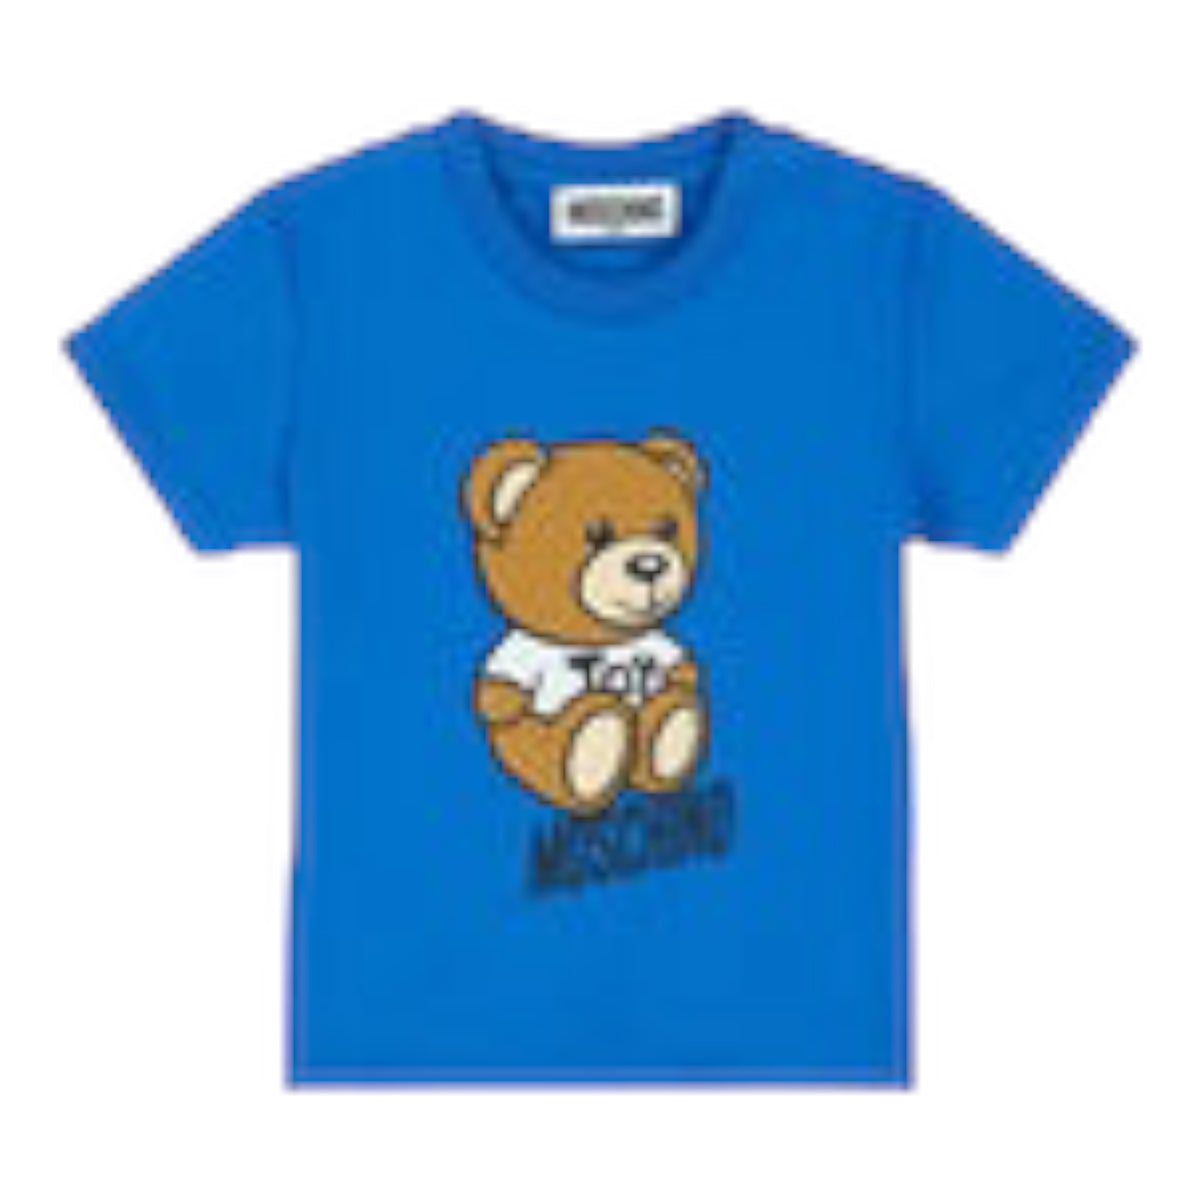 Moschino Kids Toddler's Bear Toy Logo T-Shirt